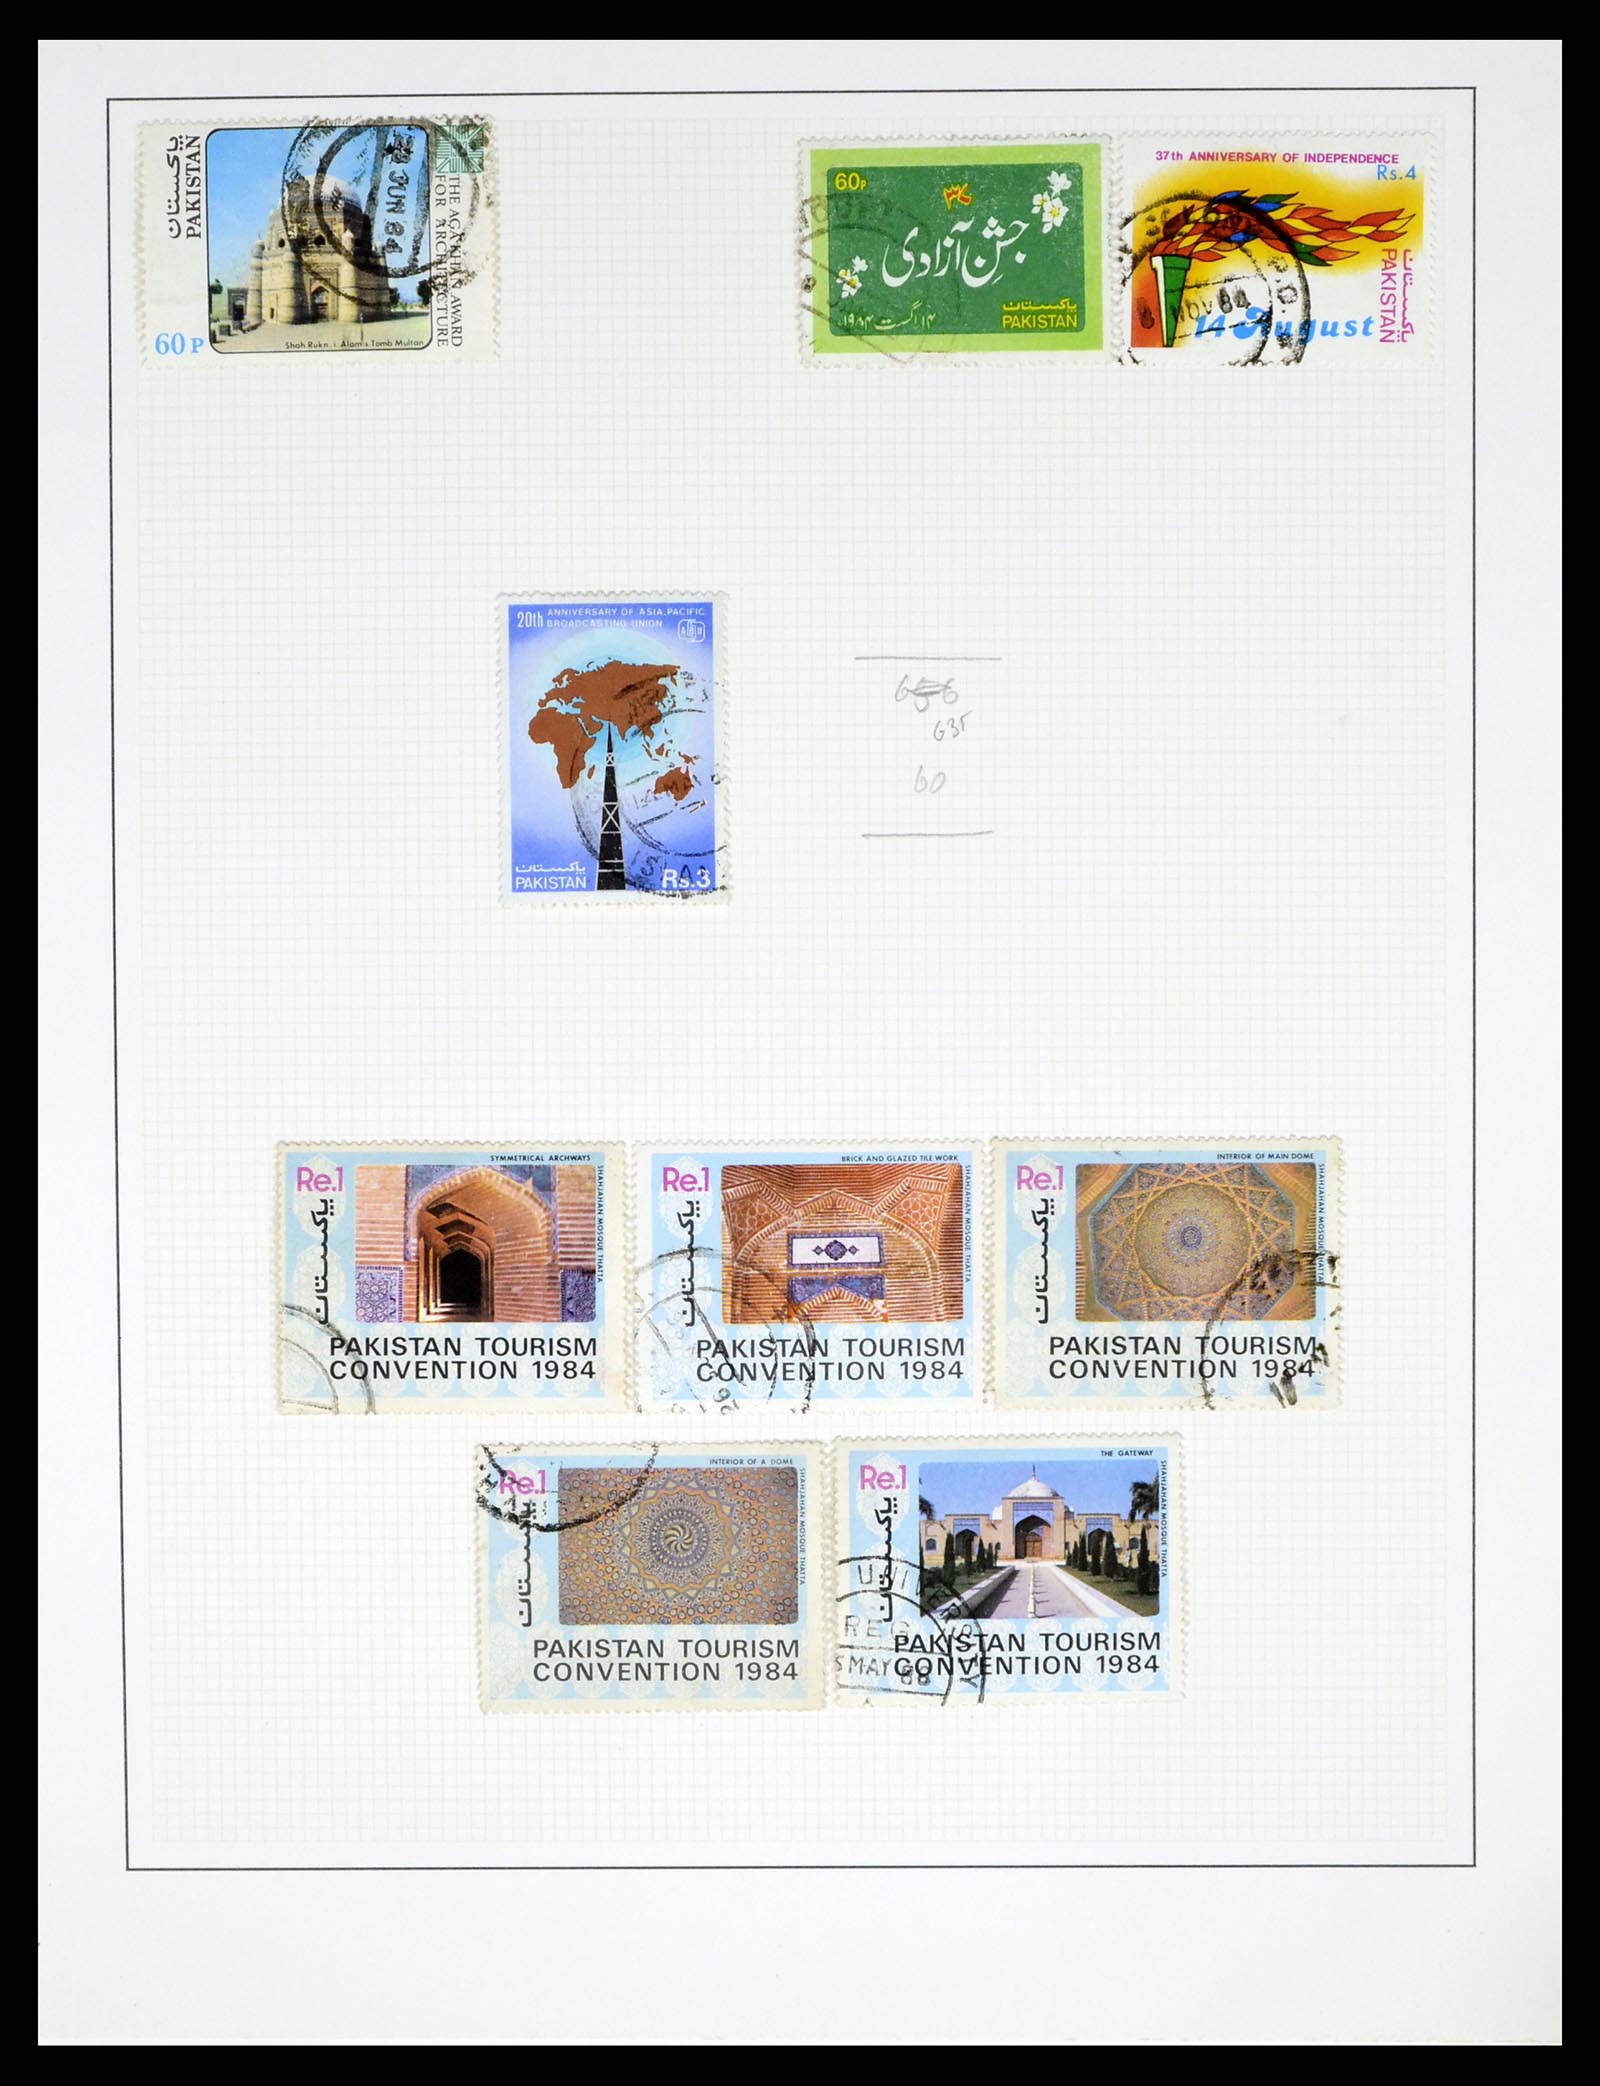 37619 059 - Stamp collection 37619 Pakistan/Bangladesh 1947-2000.